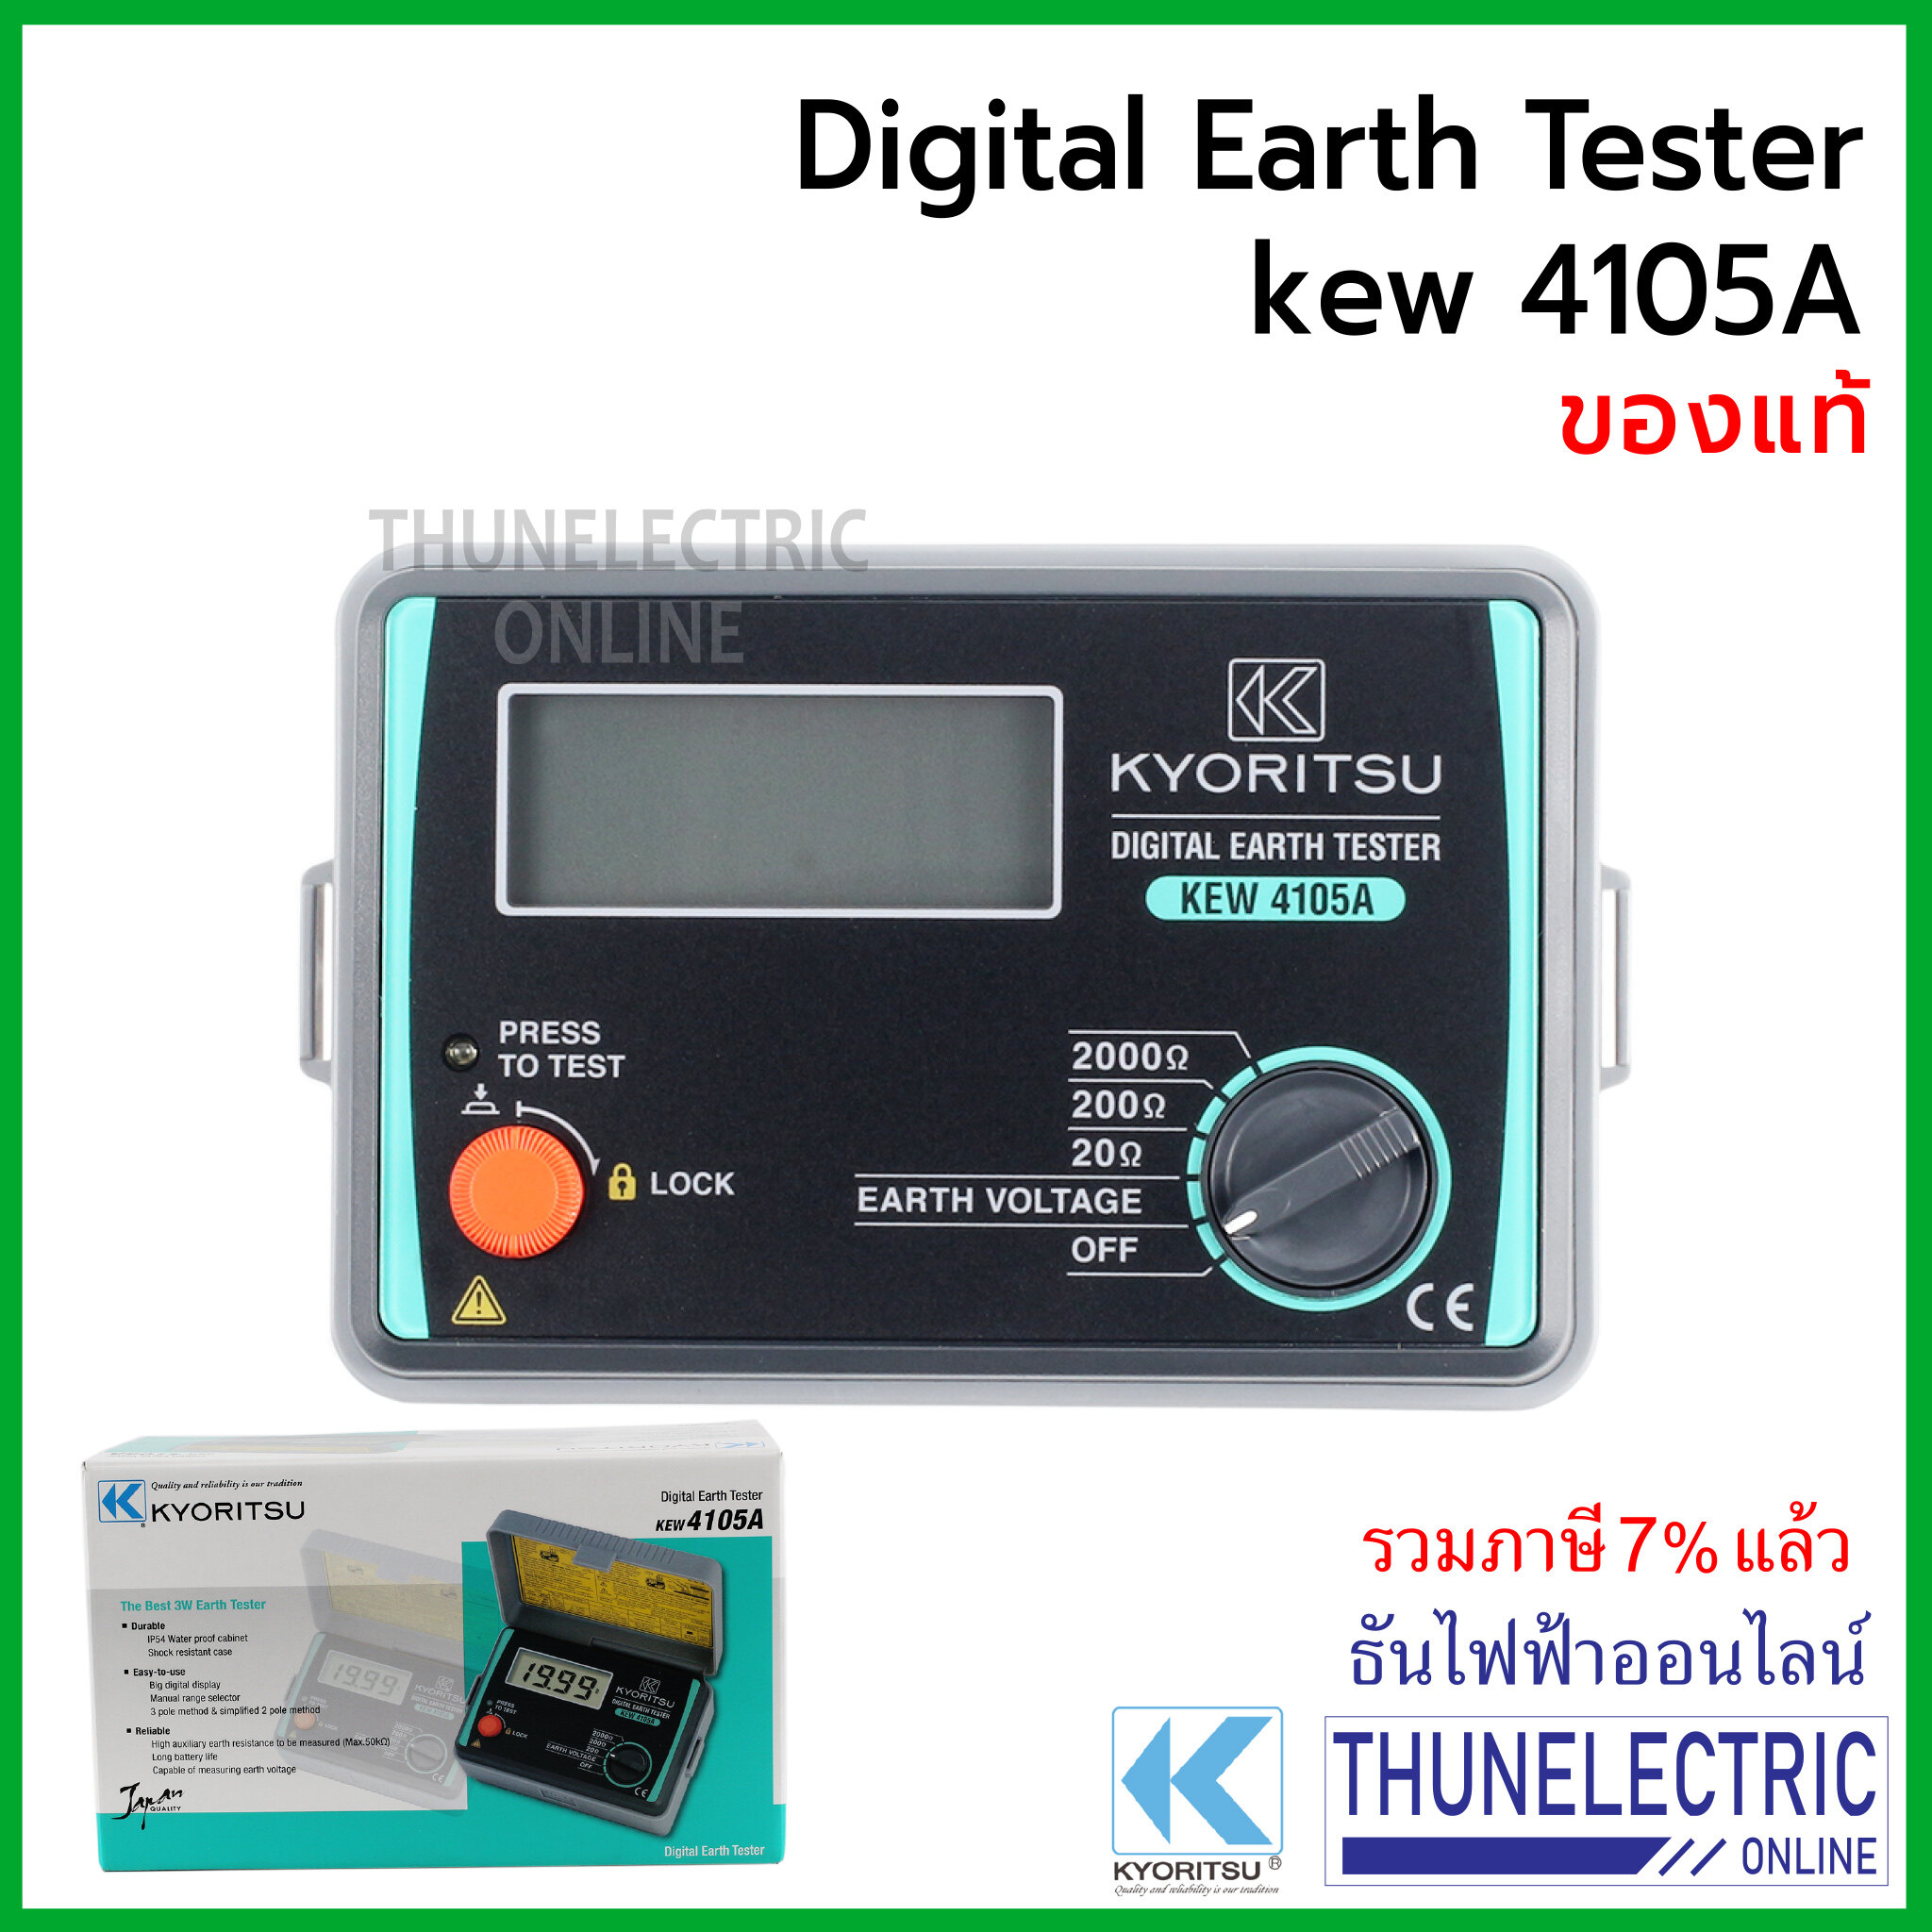 Kyoritsu มิเตอร์วัดความต้านทานดิน ดิจิตอล KEW 4105A Digital Earth Tester เครื่องวัดค่าความต้านทานดิน เคียวริทสึ ธันไฟฟ้า